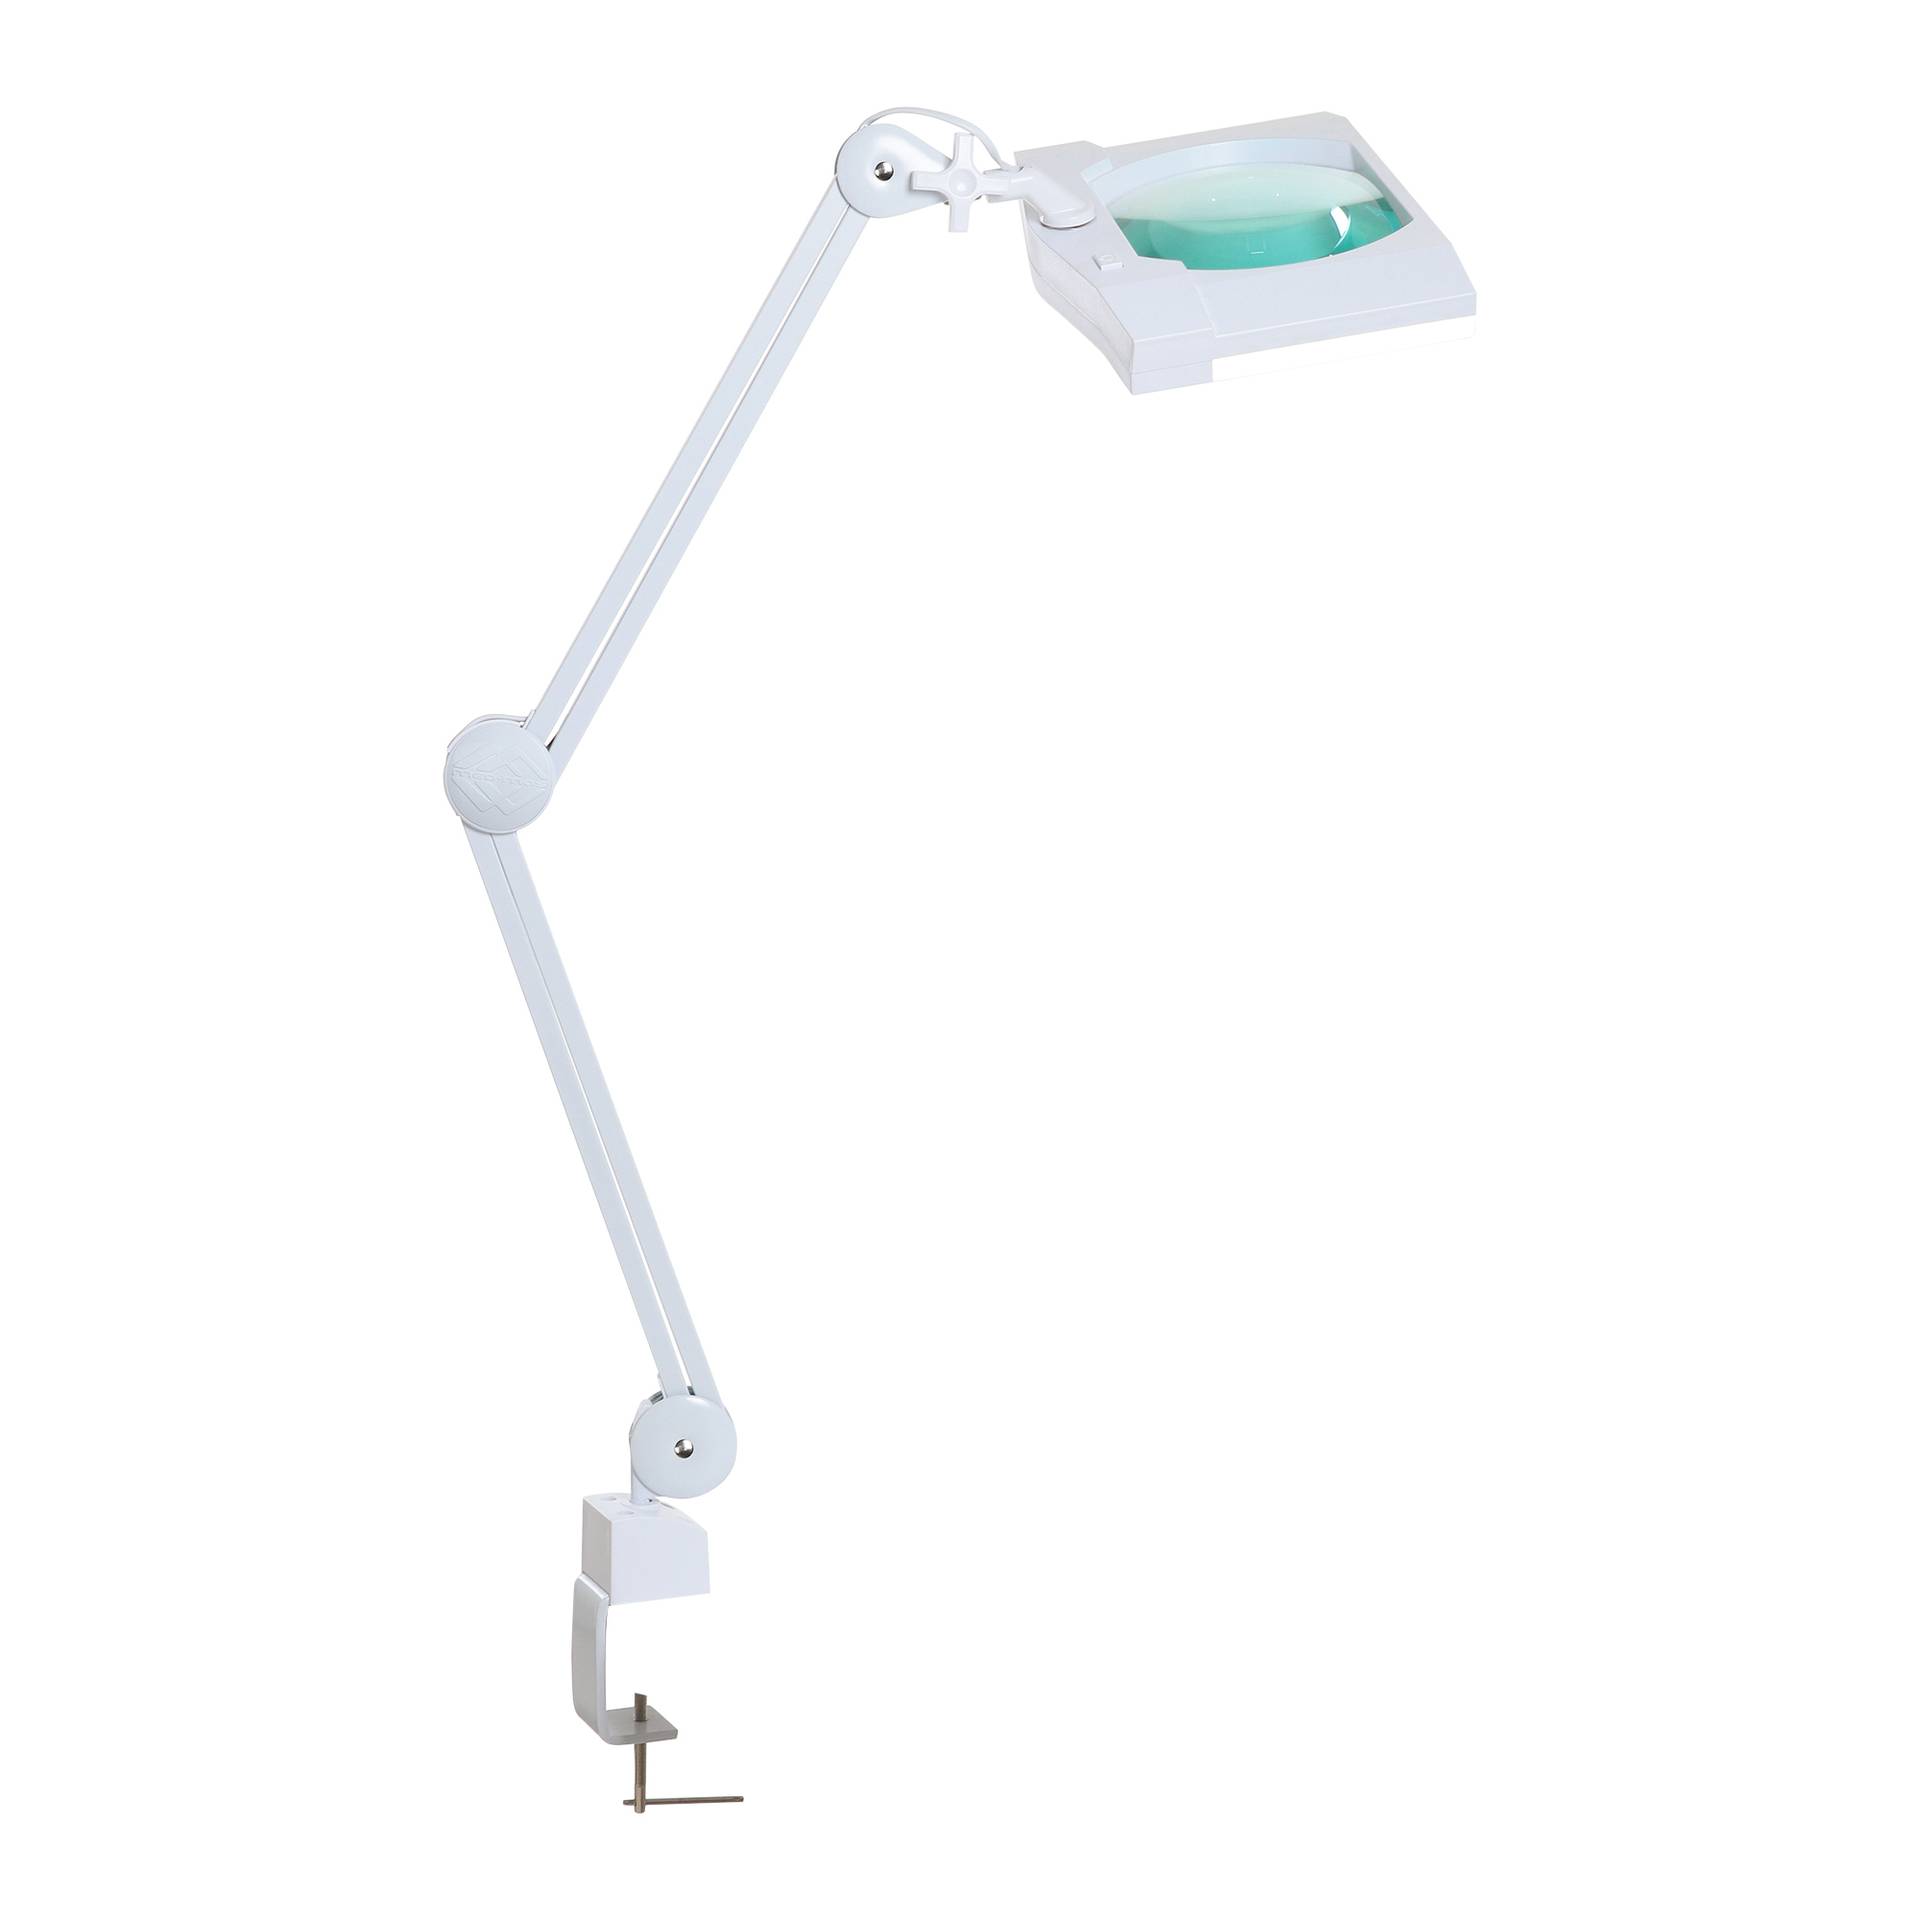 Лампа бестеневая с РУ (лампа-лупа) Med-Mos 9002LED (9002LED-D), П-образная, увеличенная площадь обзора